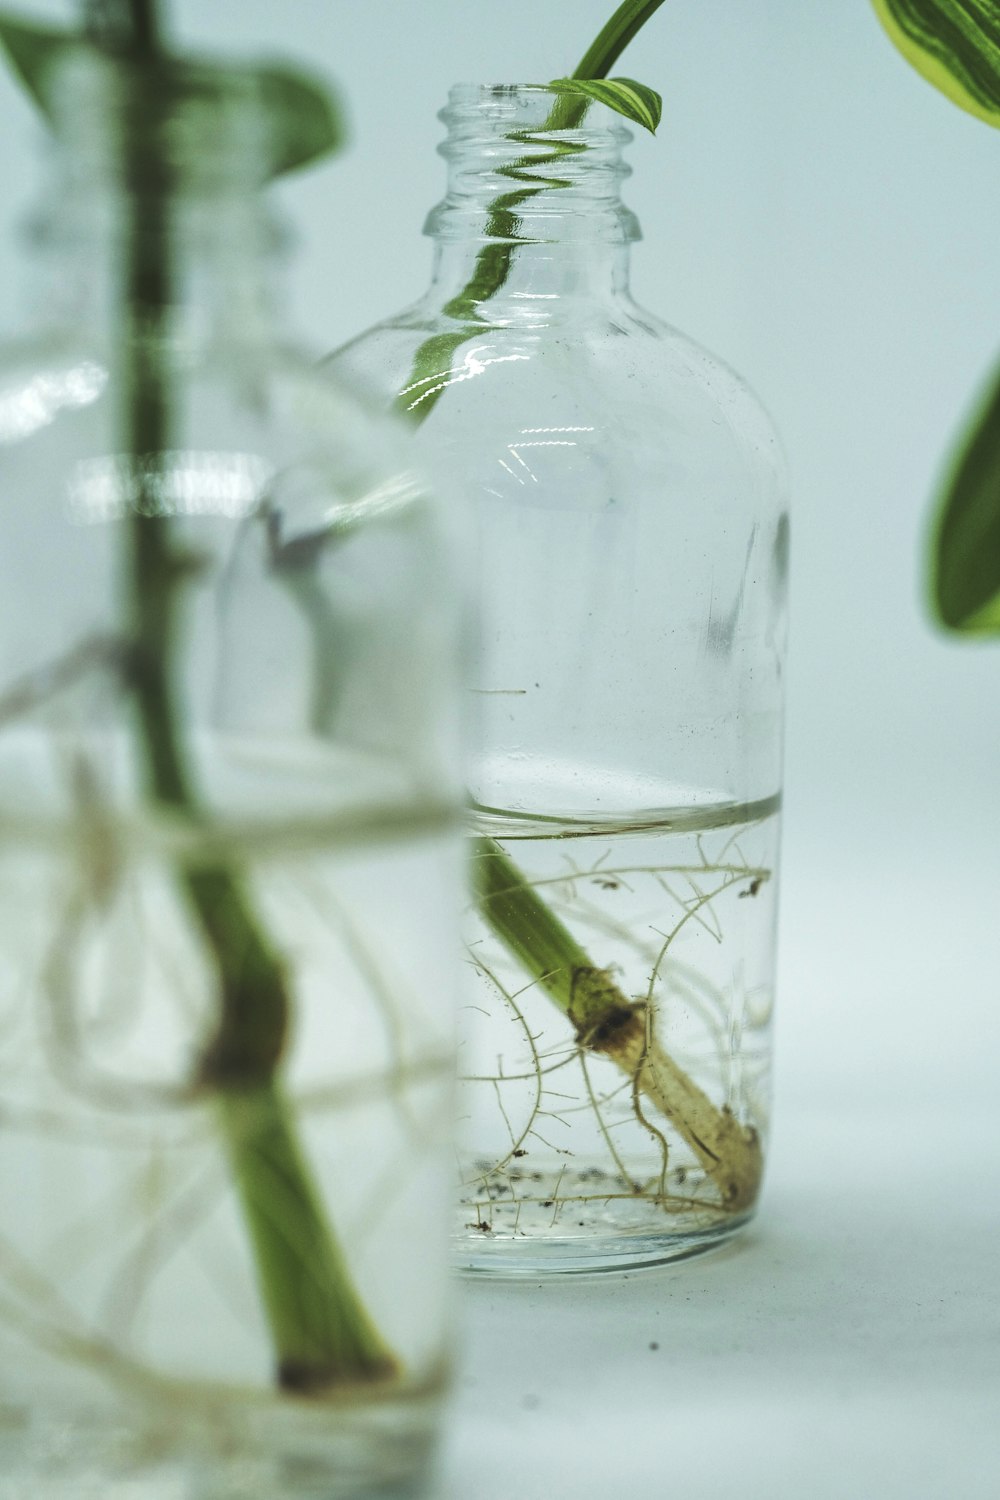 green grasshopper on glass bottle